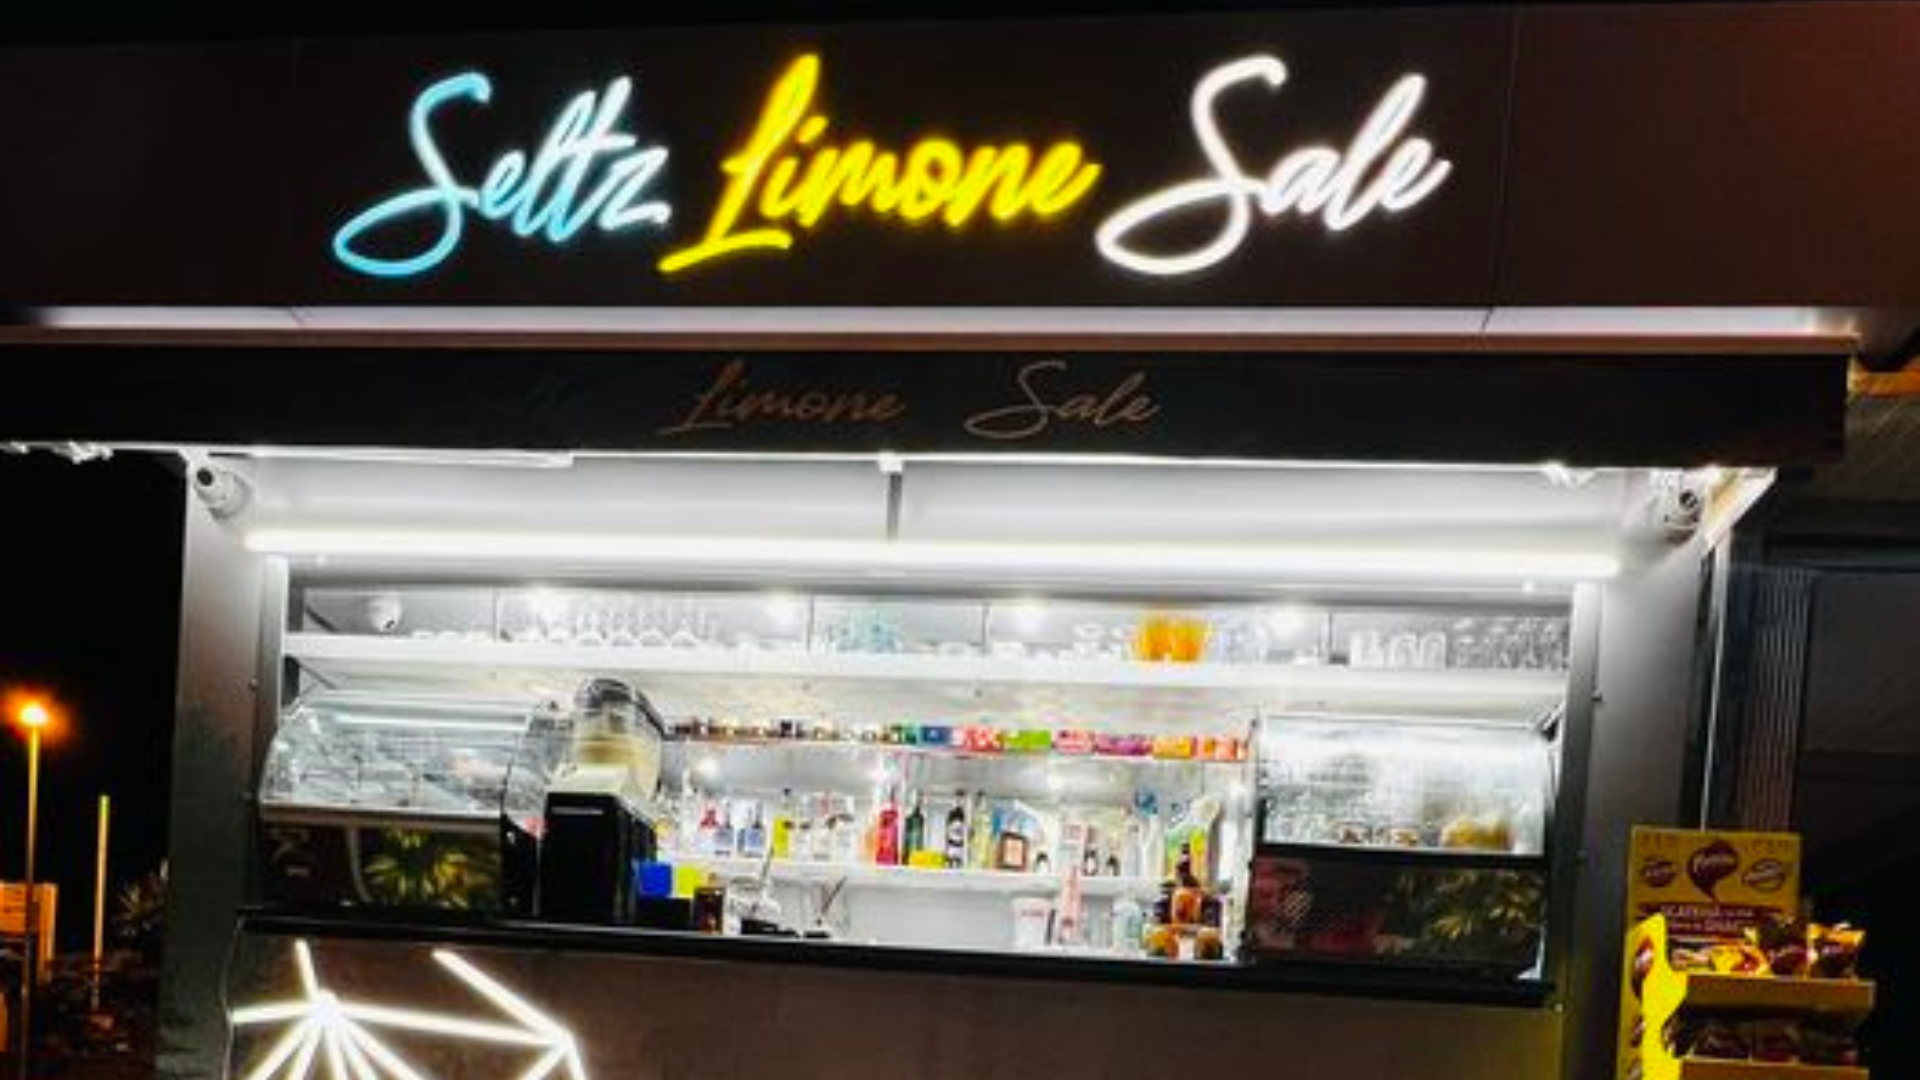 Gravina, il chiosco <em>Seltz limone sale</em> in piazza Duca di Camastra<br>L’indagine per falso ideologico archiviata sulla dirigente comunale